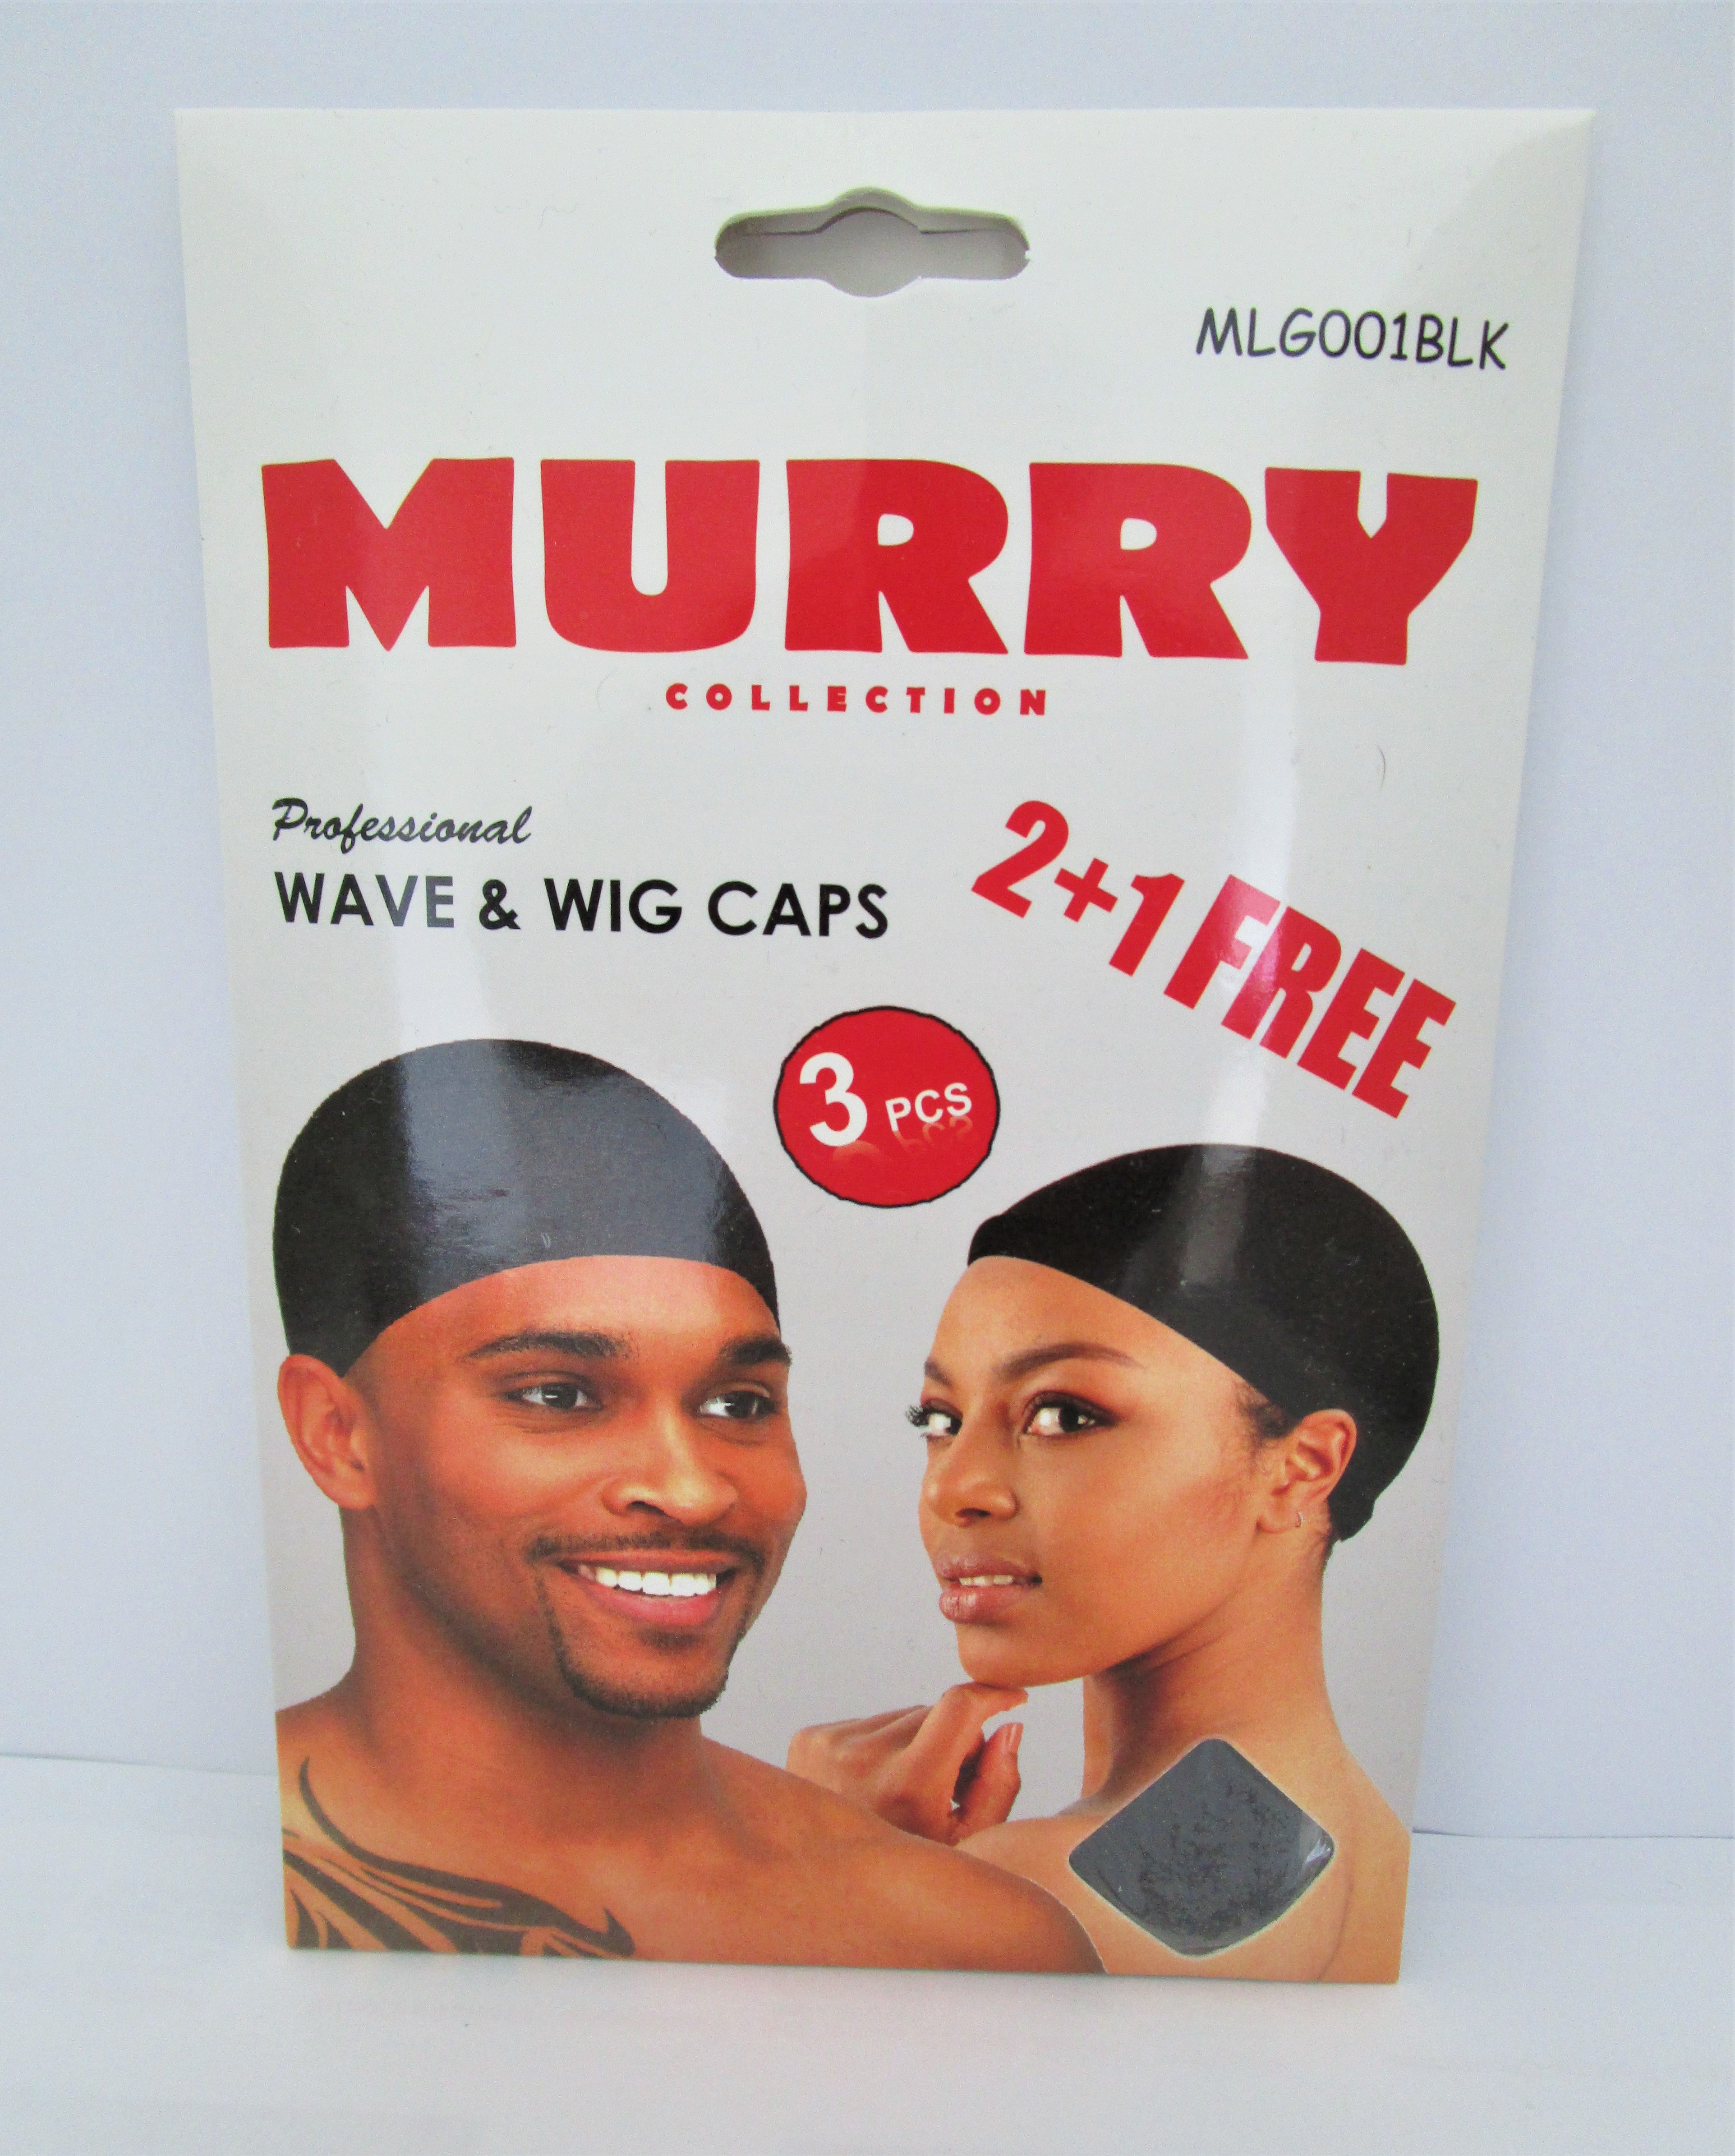 MURRY Collection Professional Wave & Wig Caps 2+1 FREE ( 3 pcs ) Couleur Noir